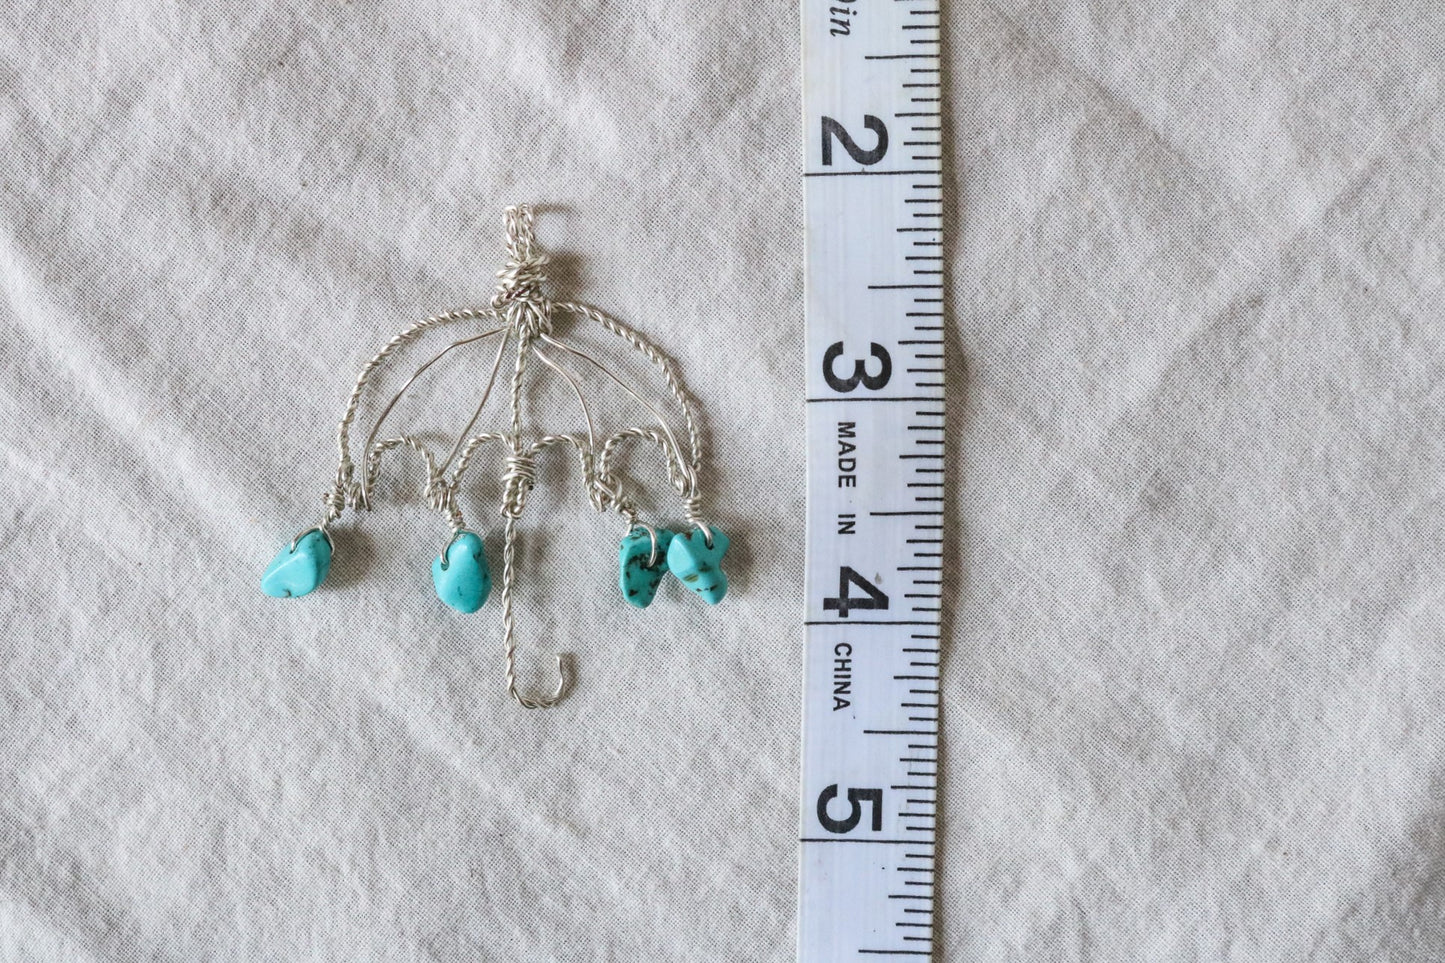 Turquoise Magnesite Umbrella Necklace